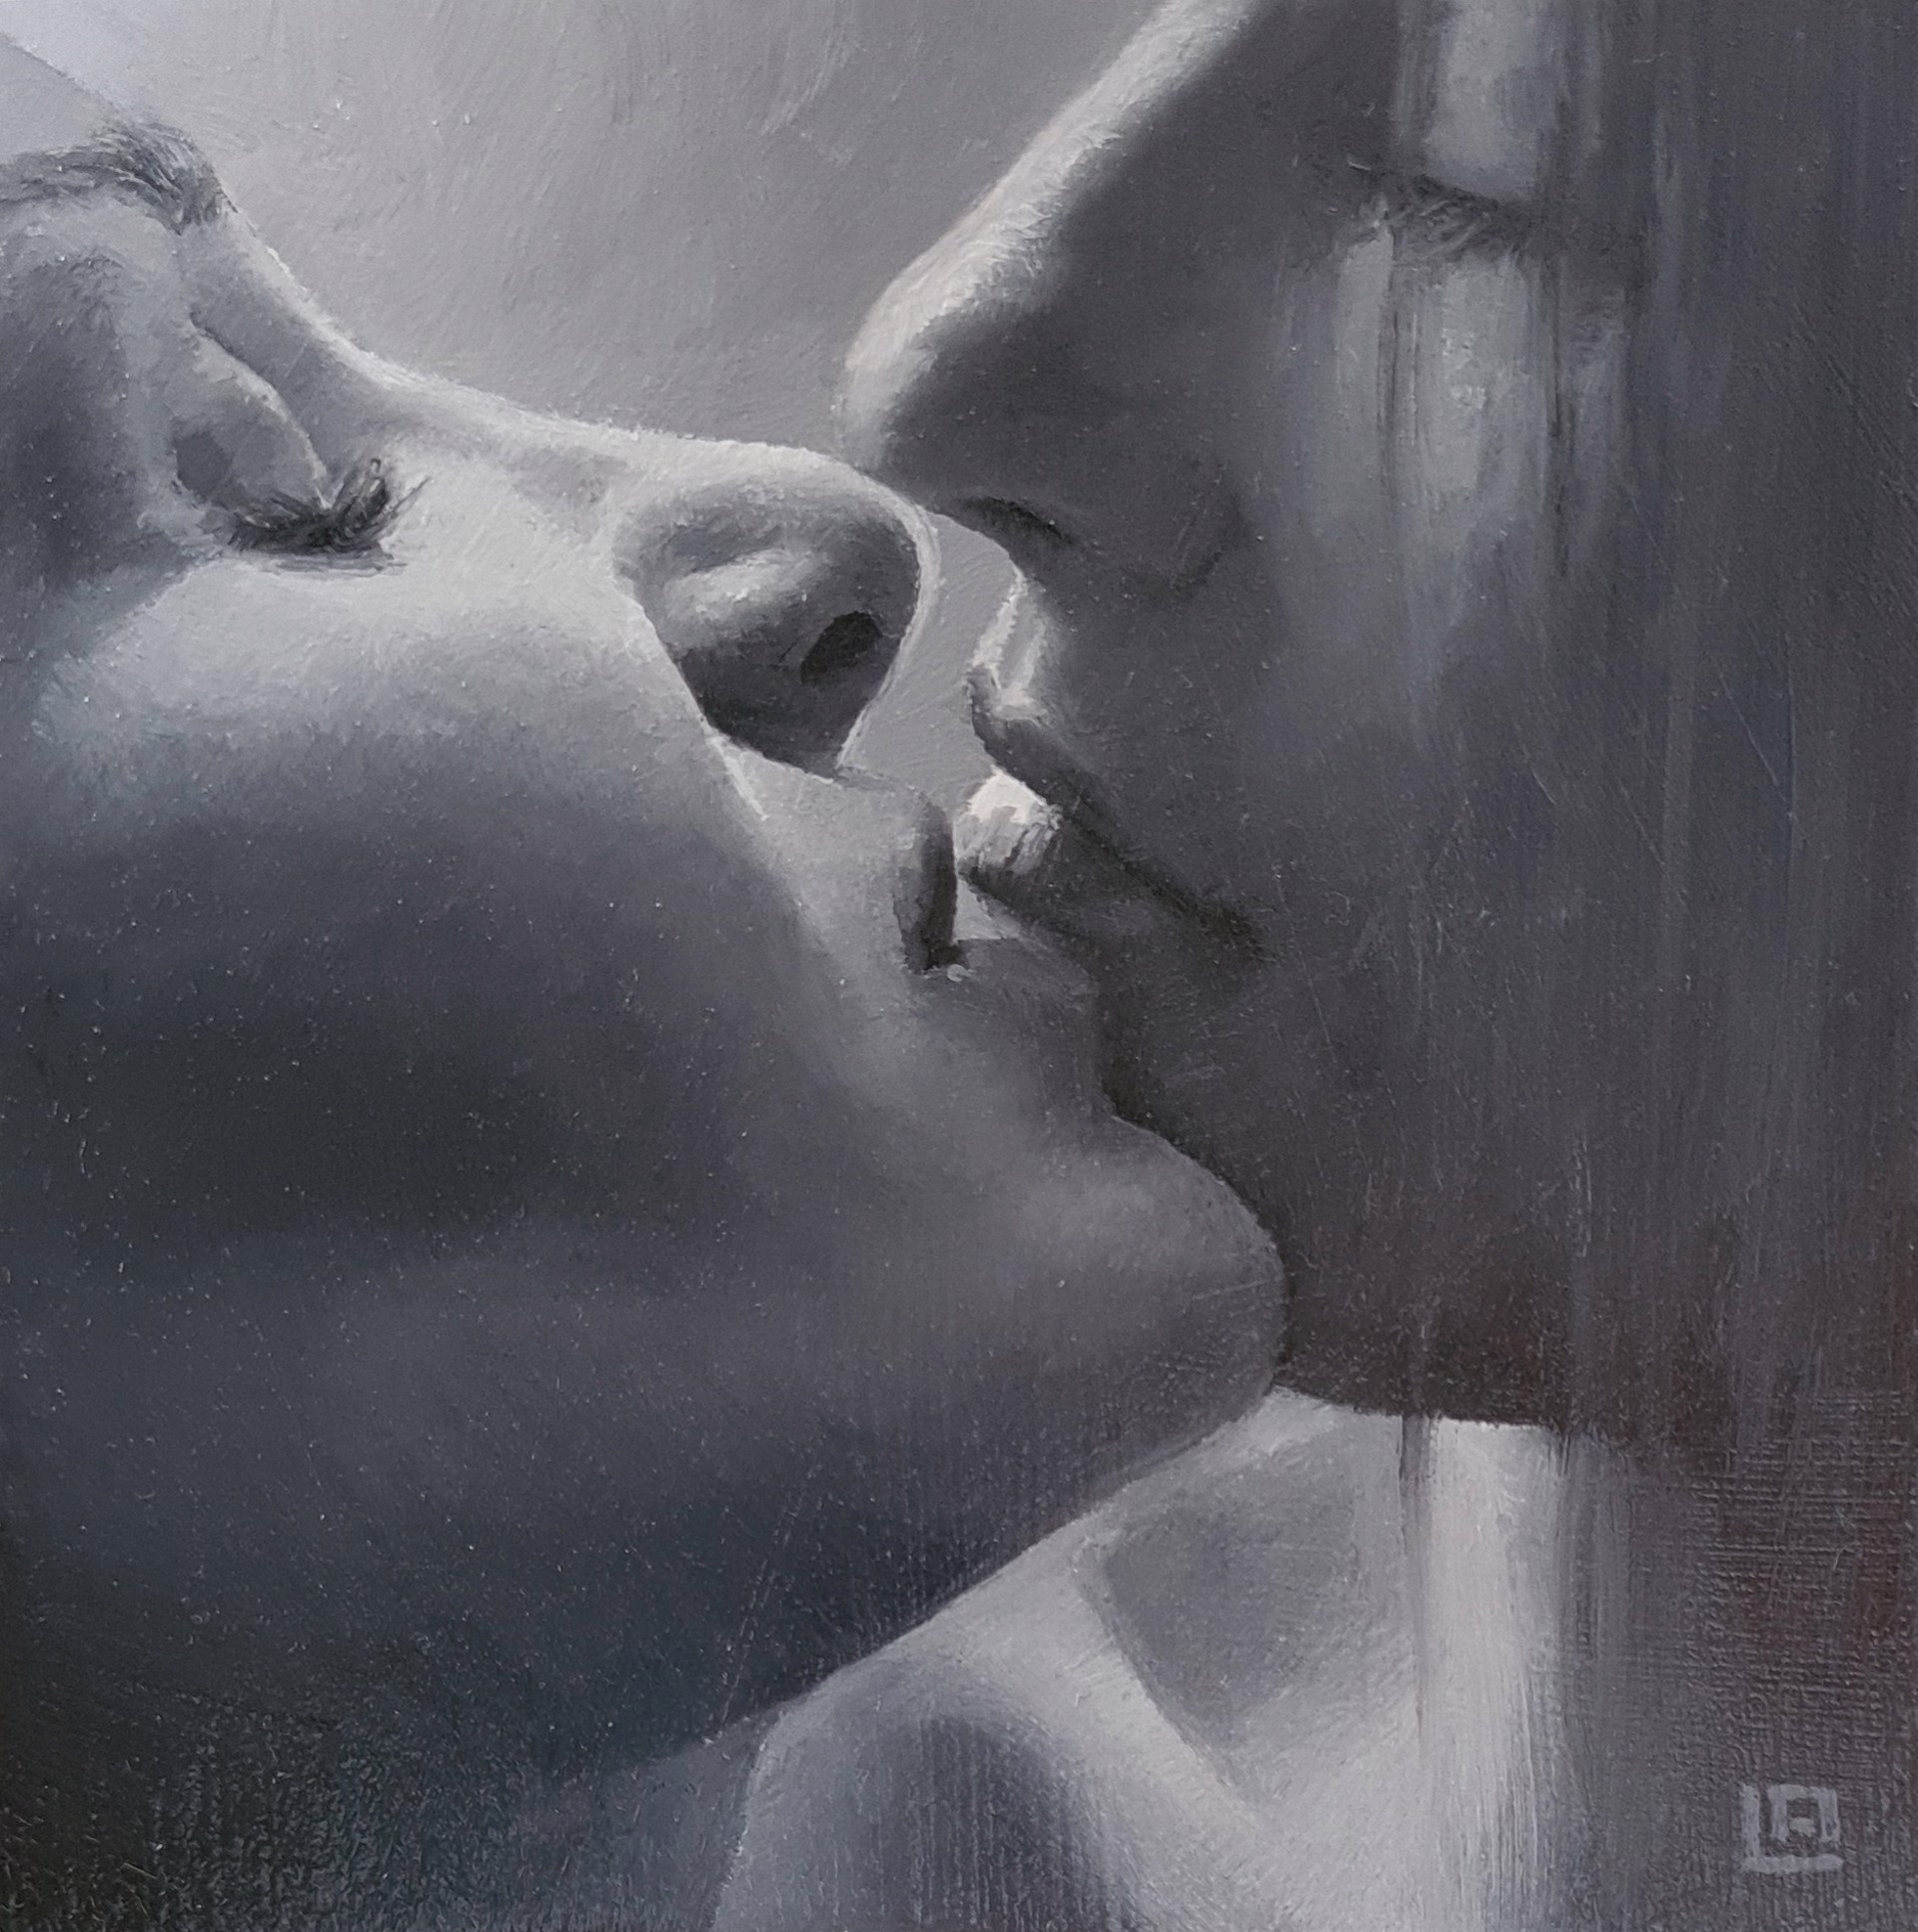 The Kiss #8 by Linda Adair